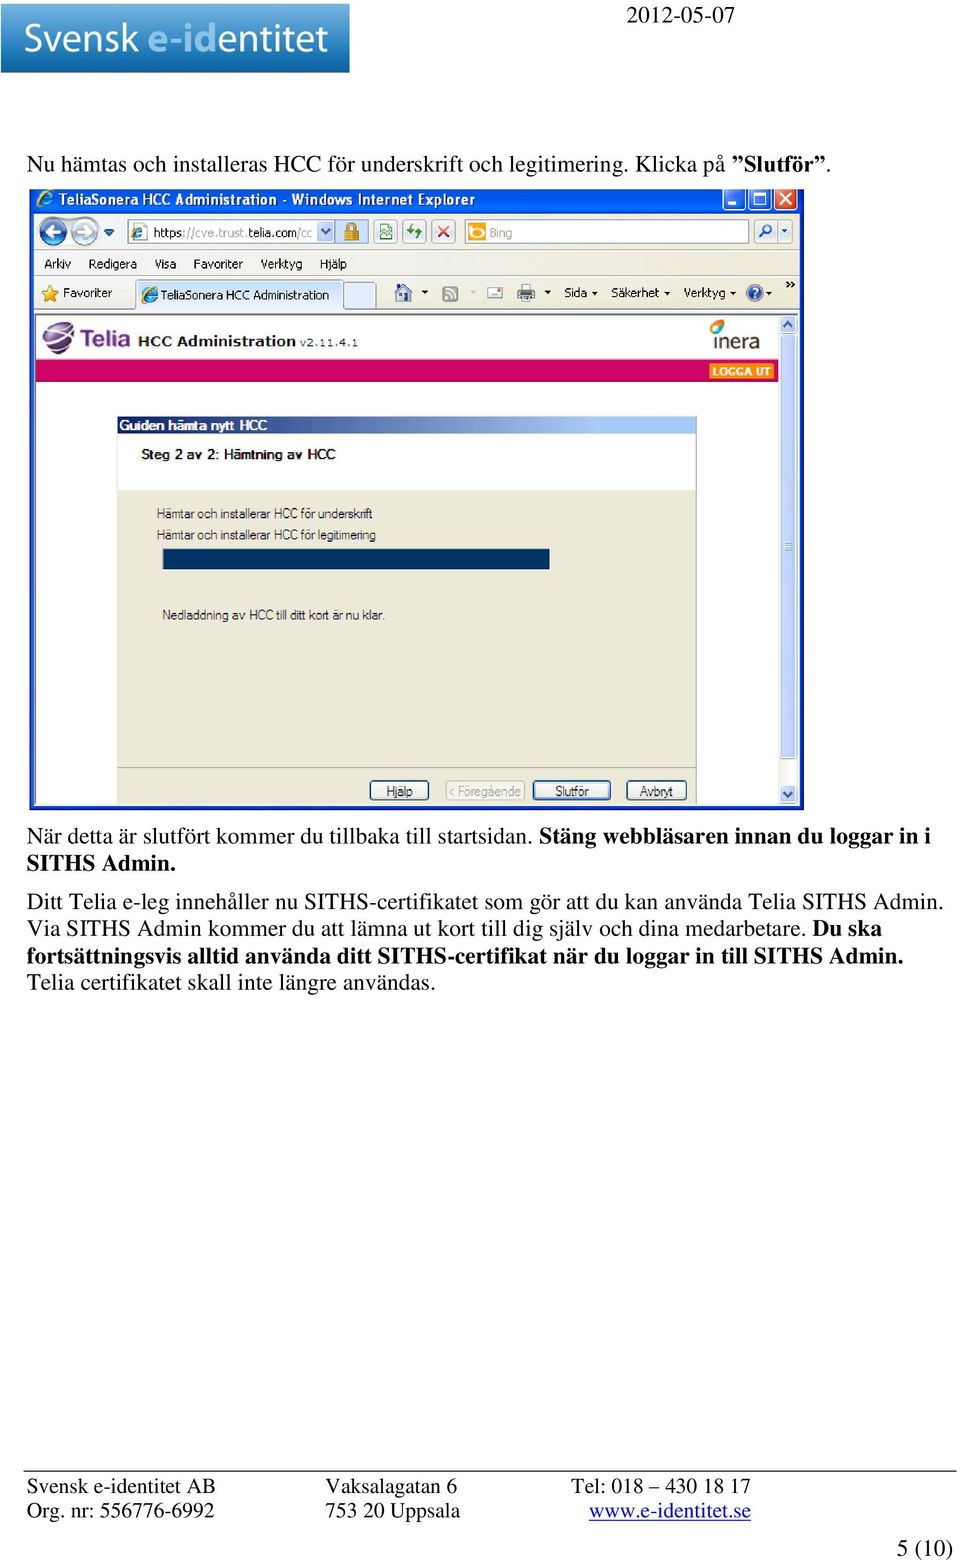 Ditt Telia e-leg innehåller nu SITHS-certifikatet som gör att du kan använda Telia SITHS Admin.